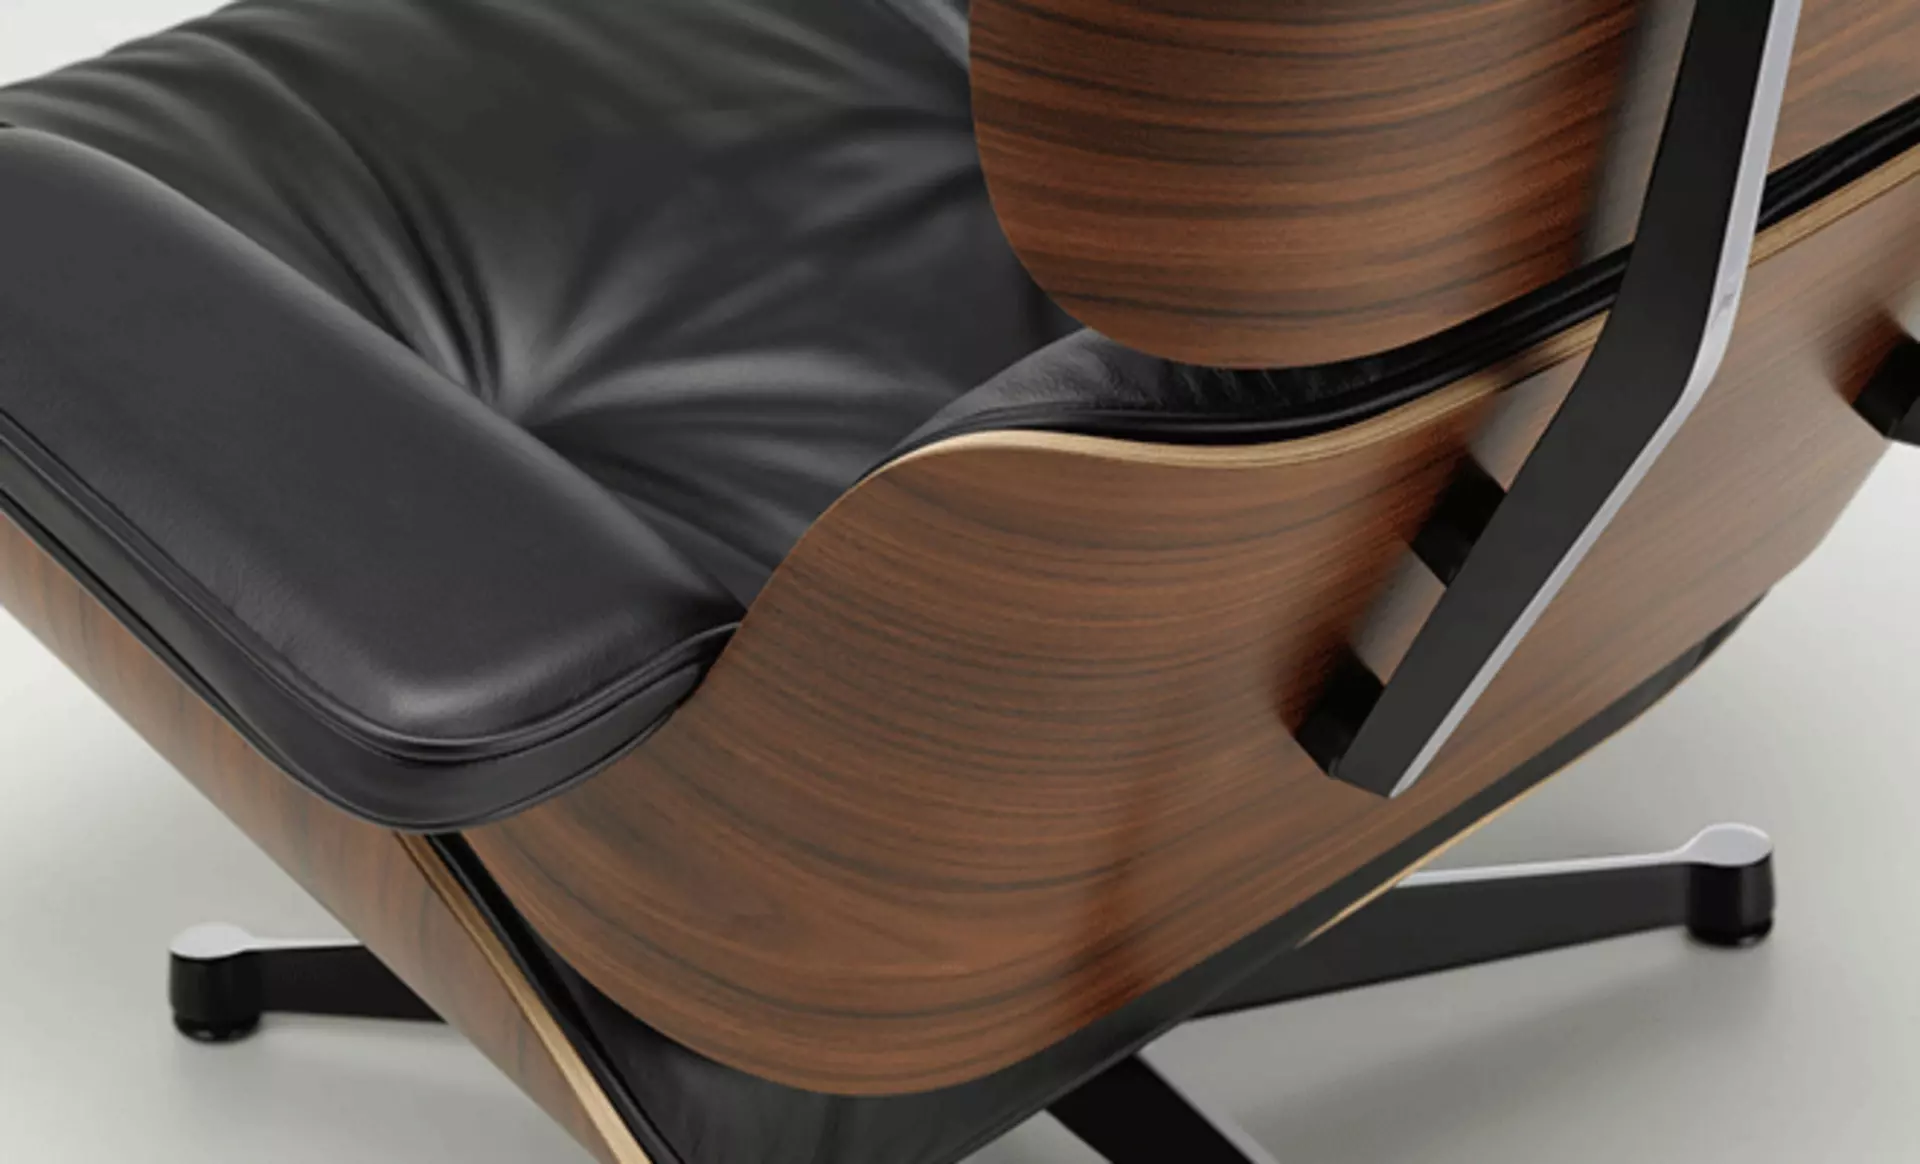 Perfektion bis ins Detail: bei der Produktion des Lounge Chairs wird nichts dem Zufall überlassen